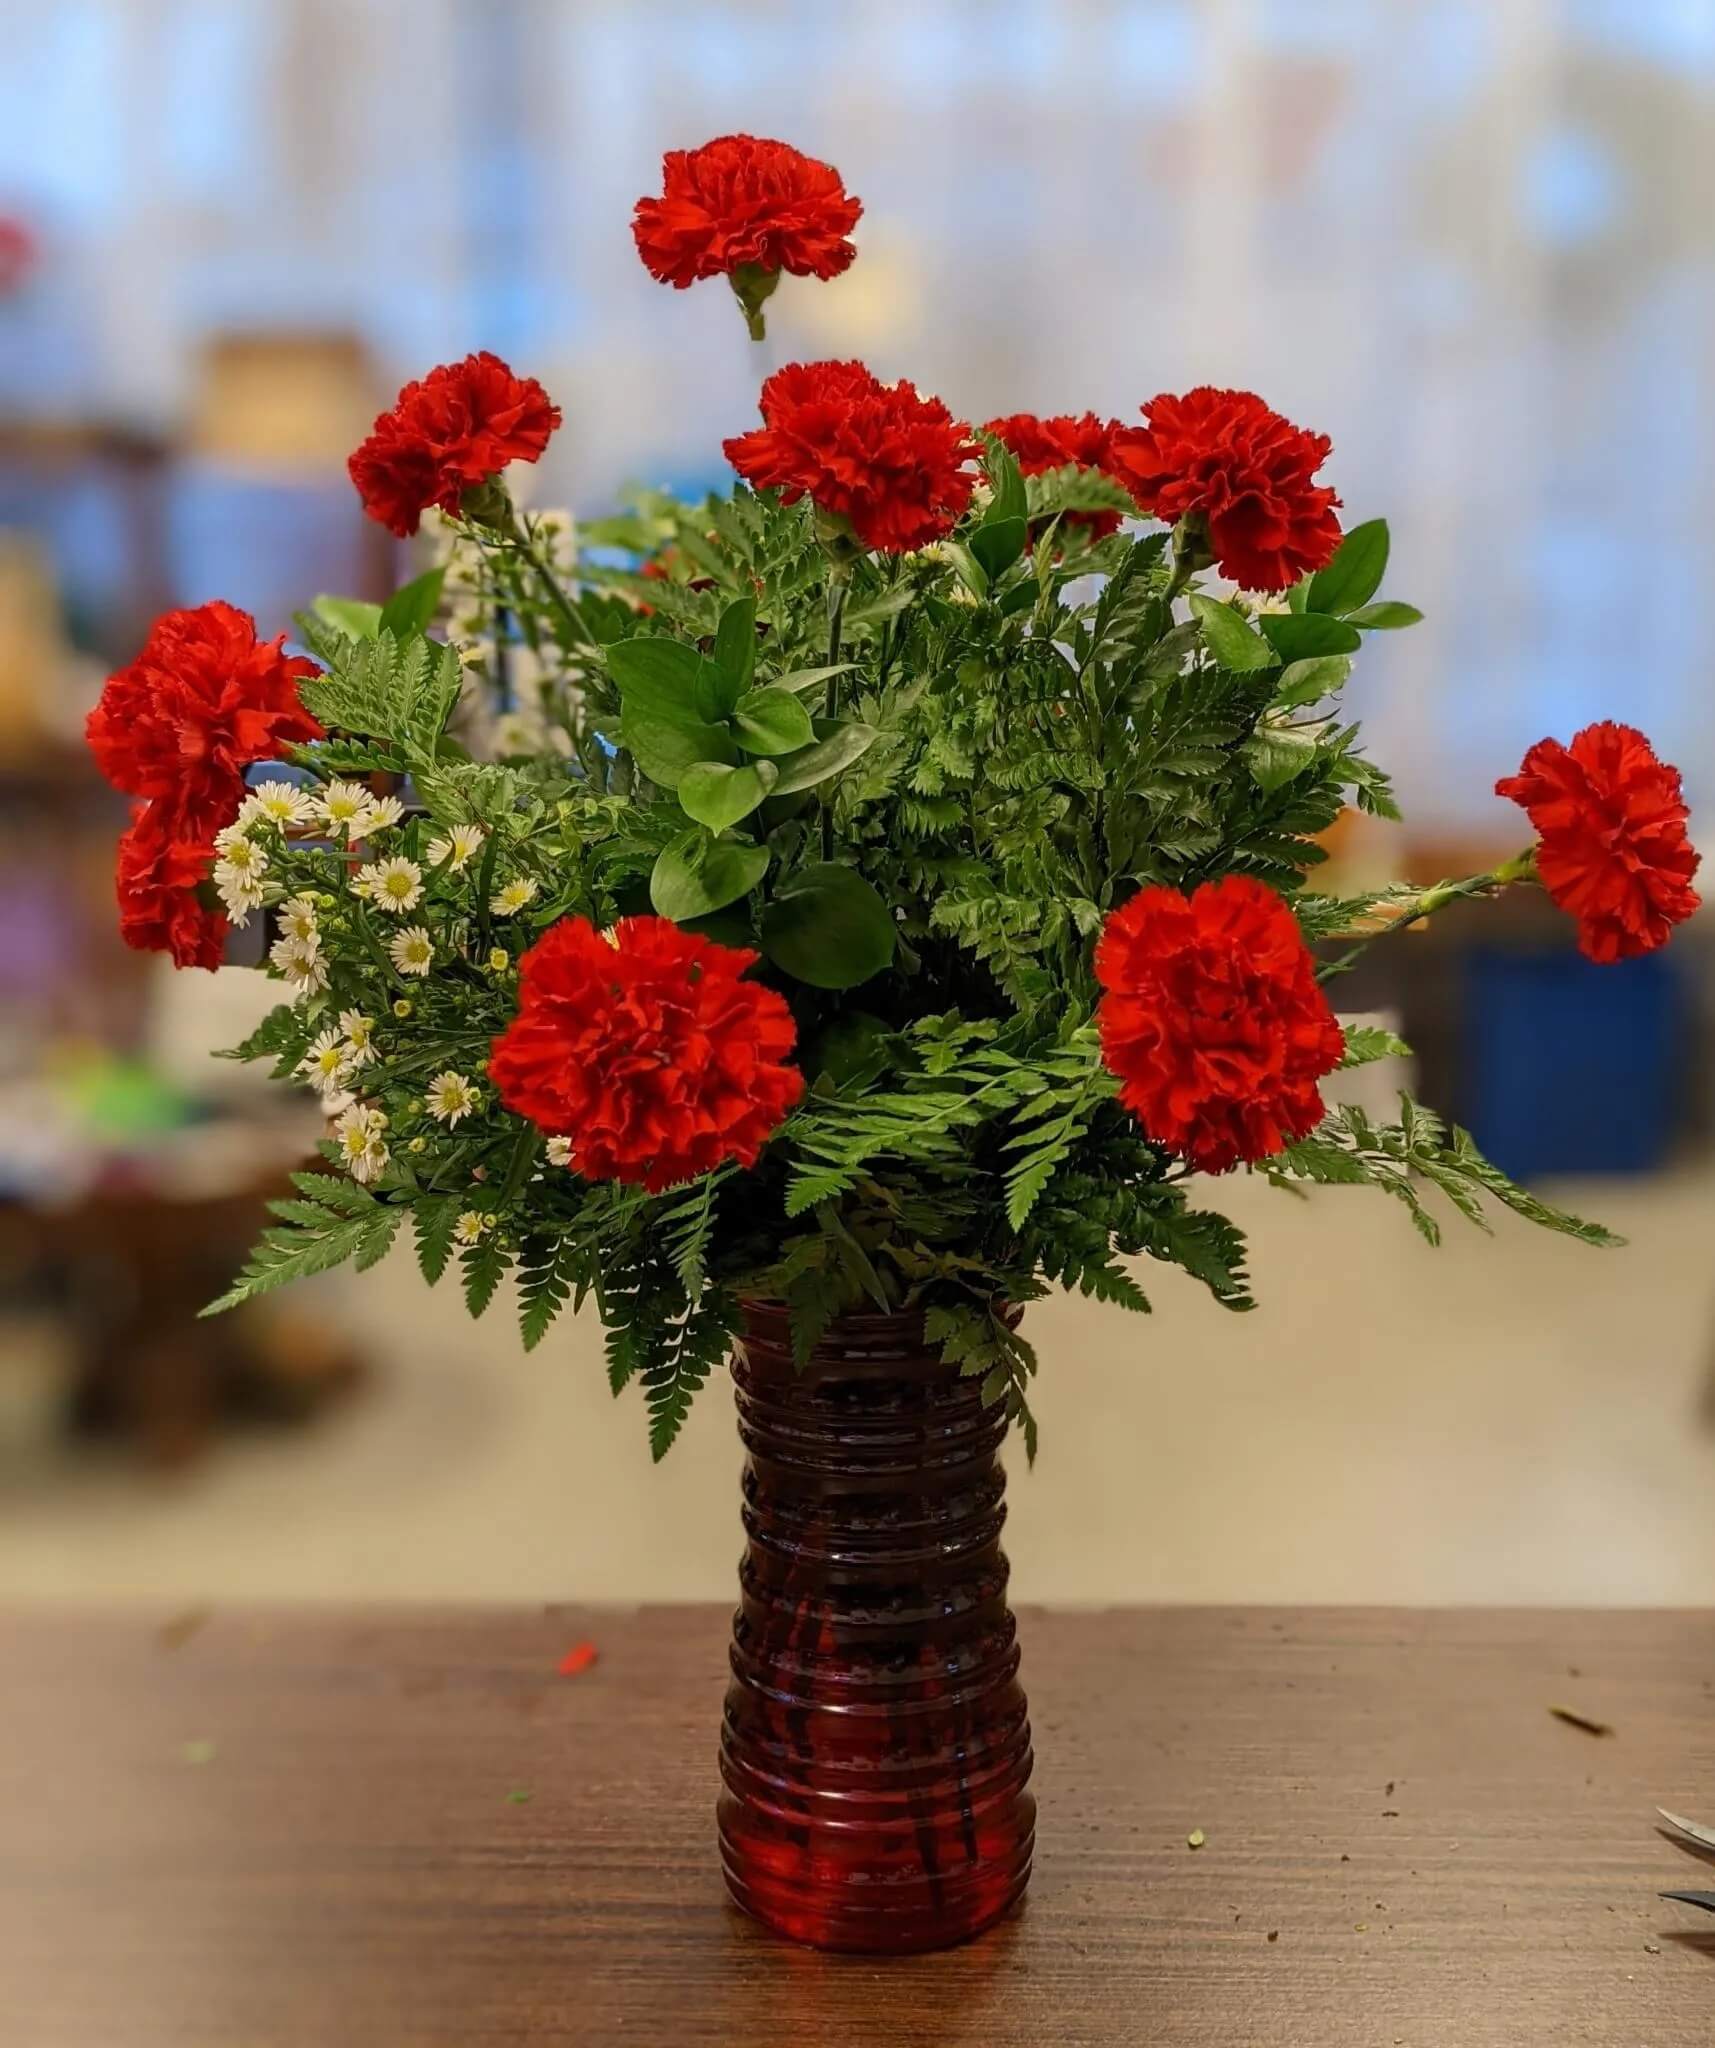 Bình hoa cẩm chướng đỏ rực rỡ mang không khí Tết vào nhà 